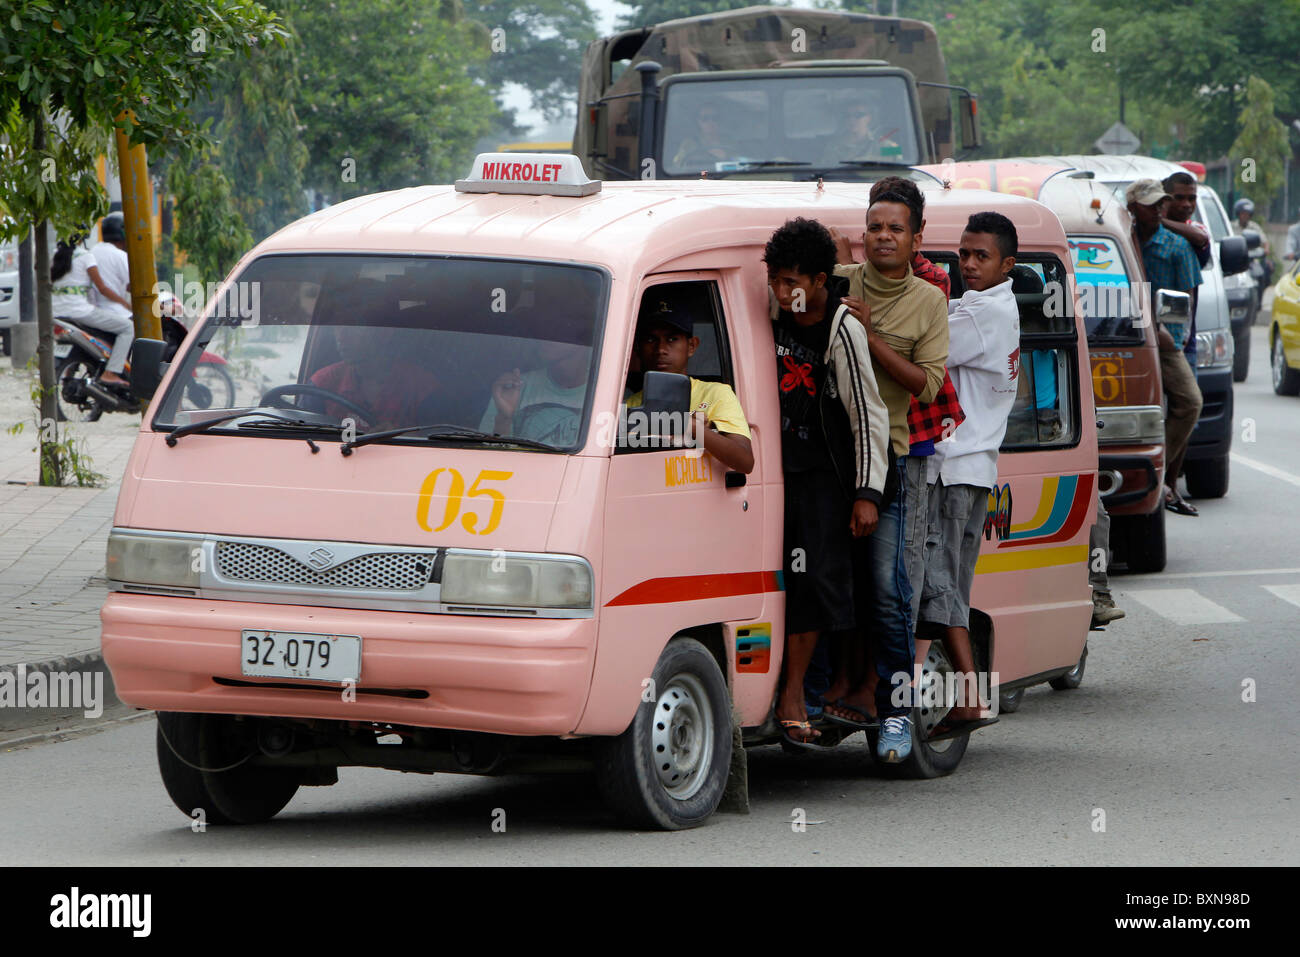 Ein Mikrolet (Kleinbus) öffentliche Verkehrsmittel in Dili, Hauptstadt von Timor-Leste (Osttimor) Stockfoto